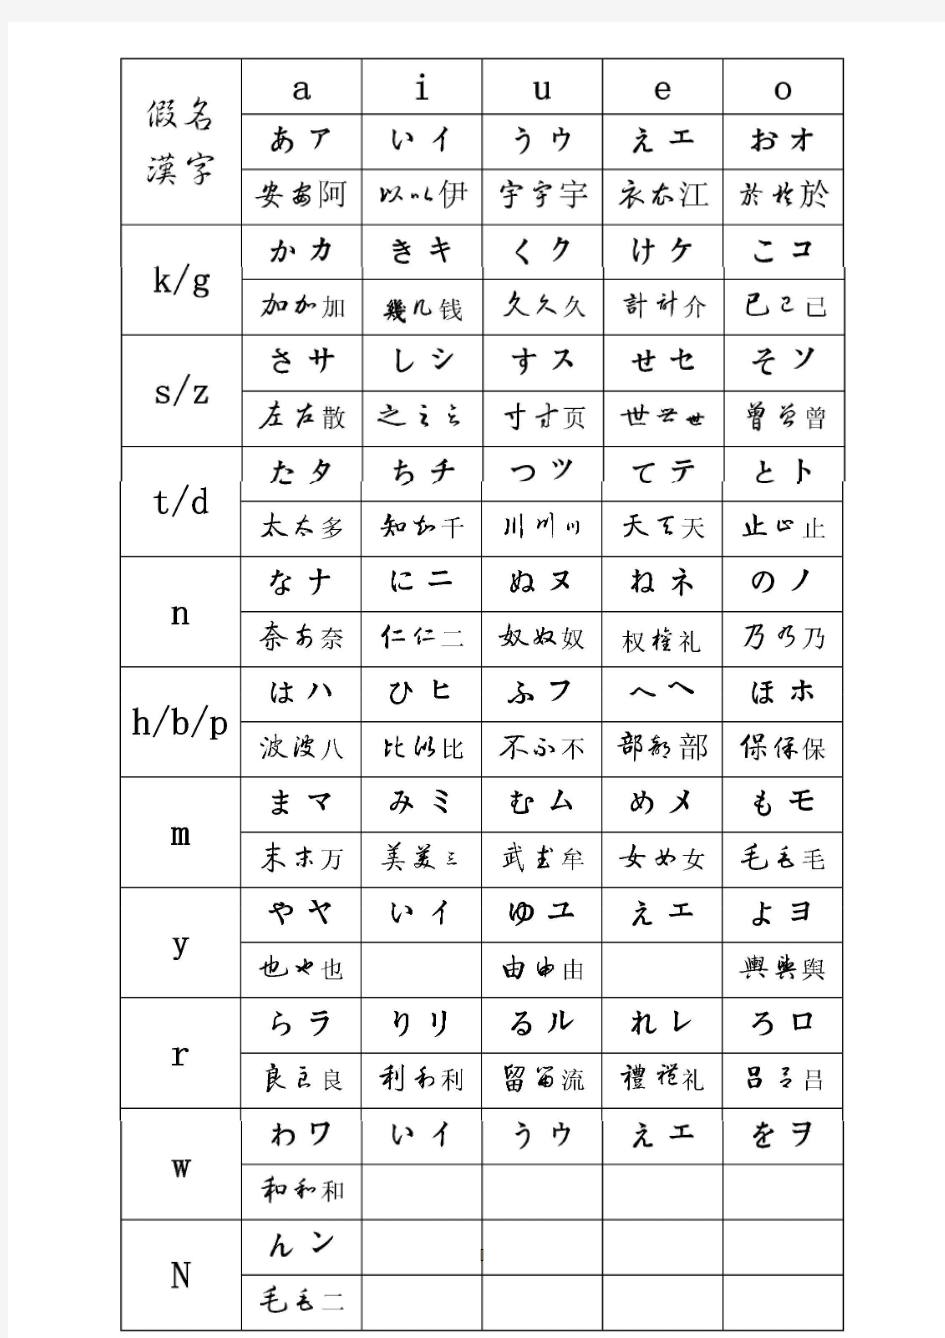 日语假名汉字对照表